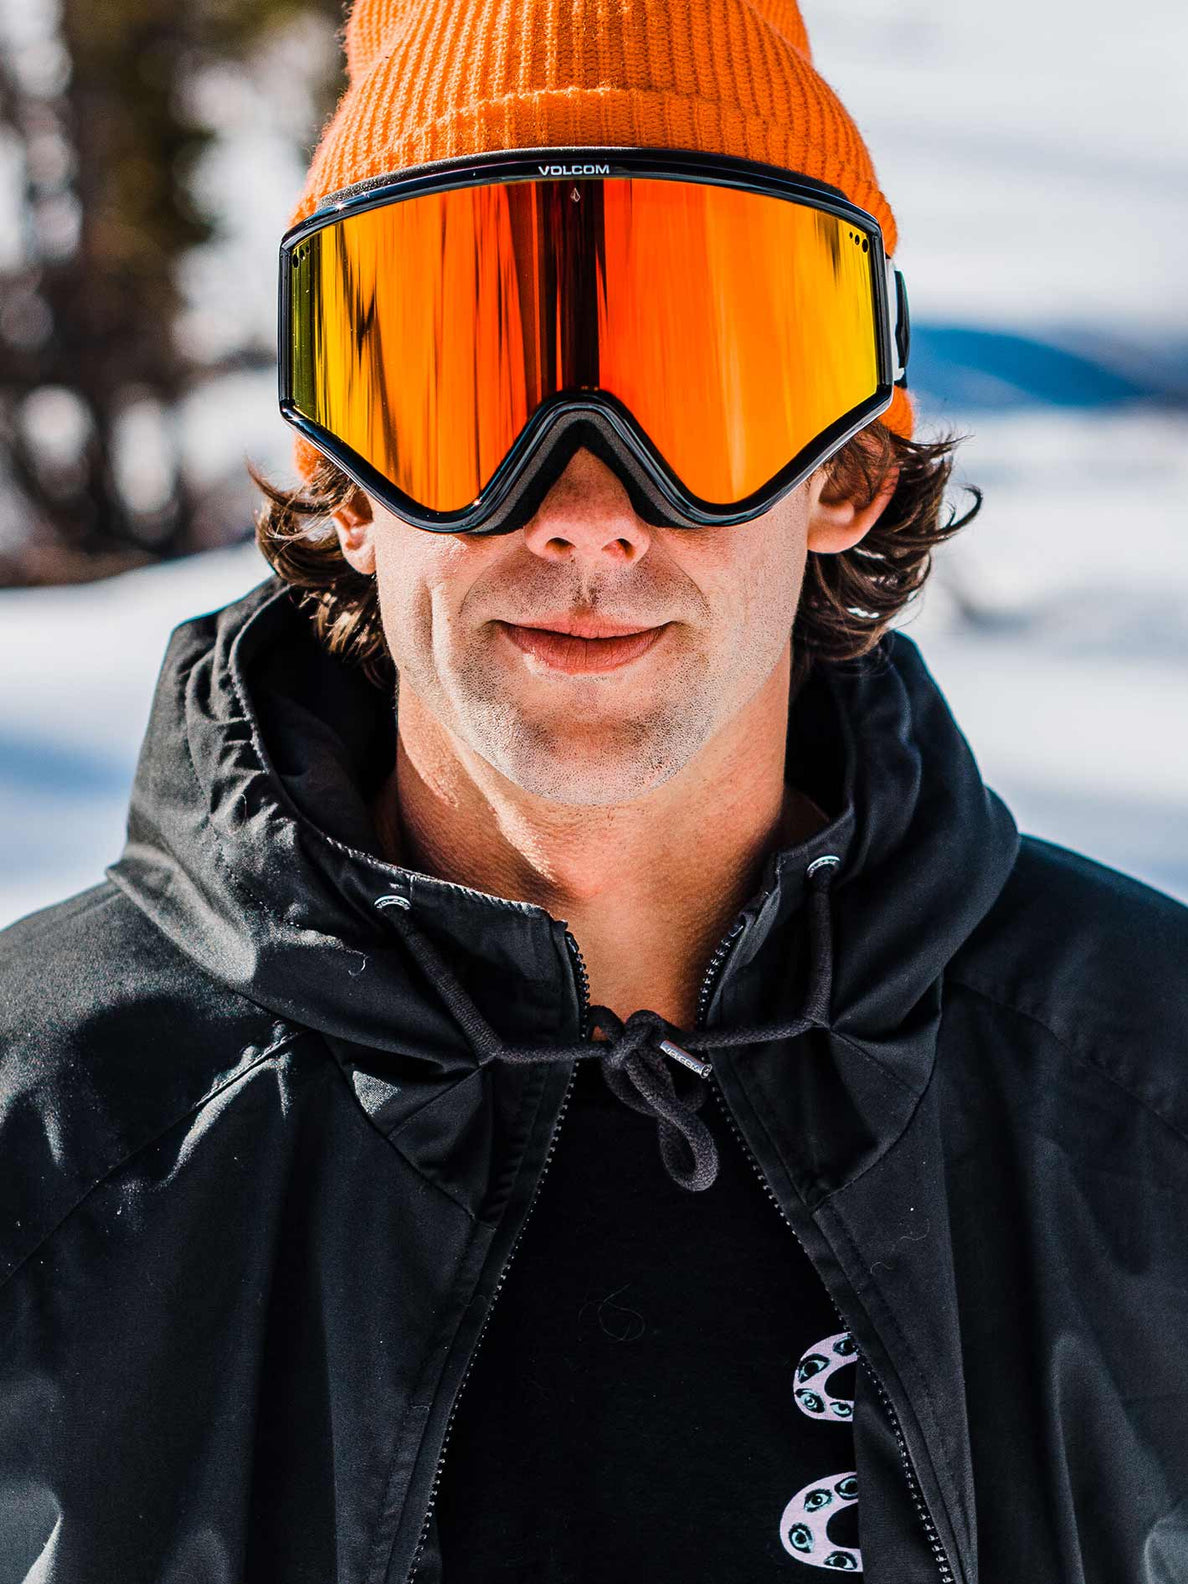 Gafas de ventisca Volcom Yae Gloss Black - Red Chrome | Gafas de snowboard | Snowboard Shop | Volcom Shop | surfdevils.com